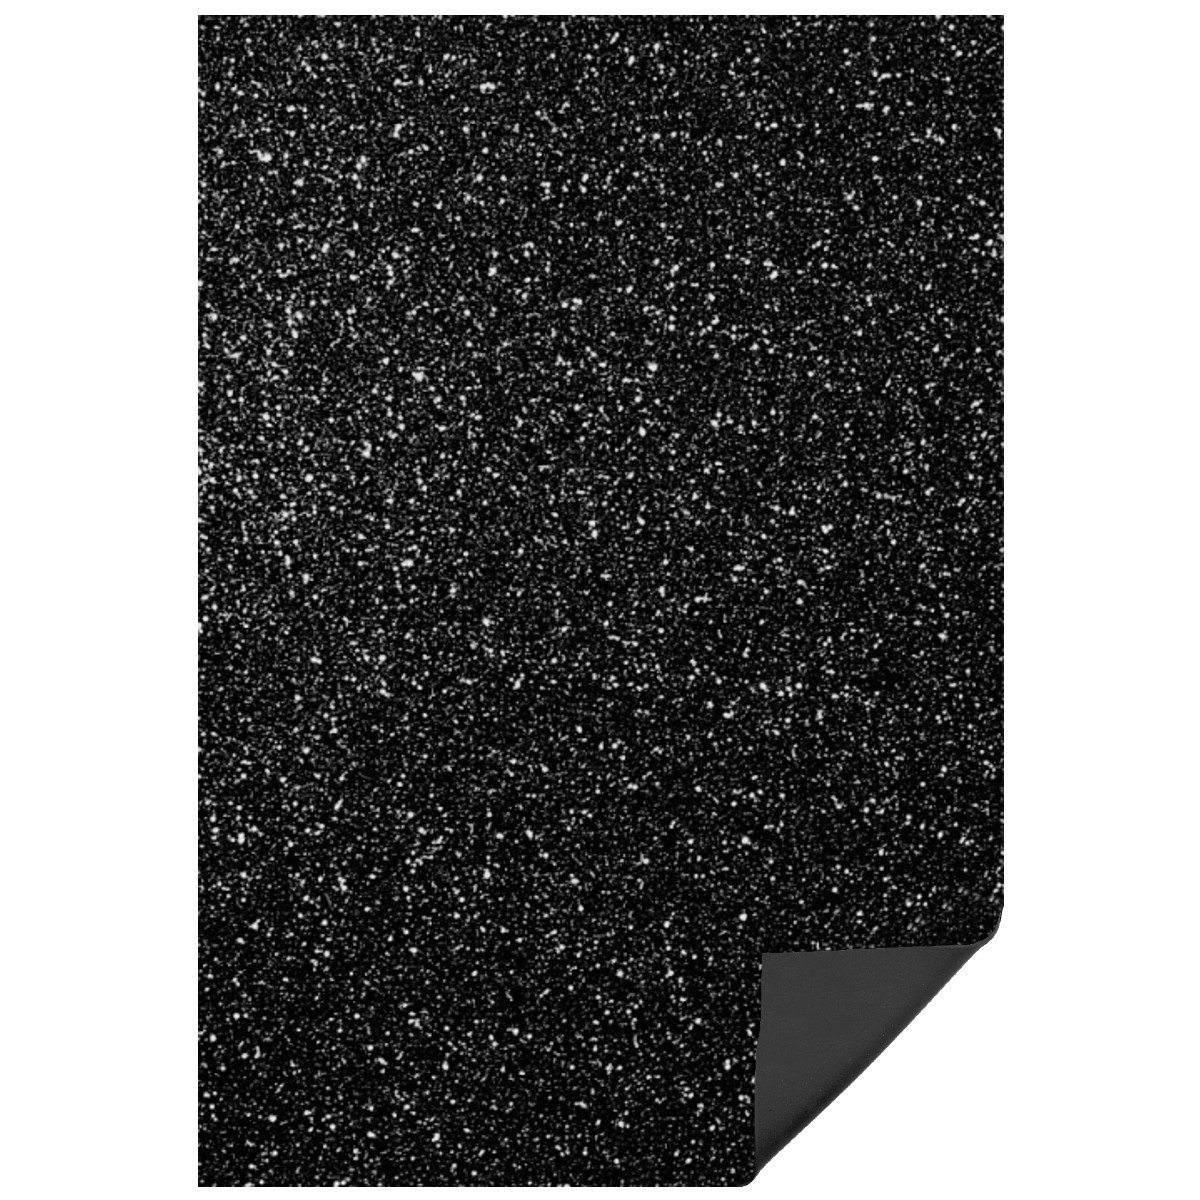 Carton buretat negru cu sclipici 40x60cm x 2mm MP PN574-16